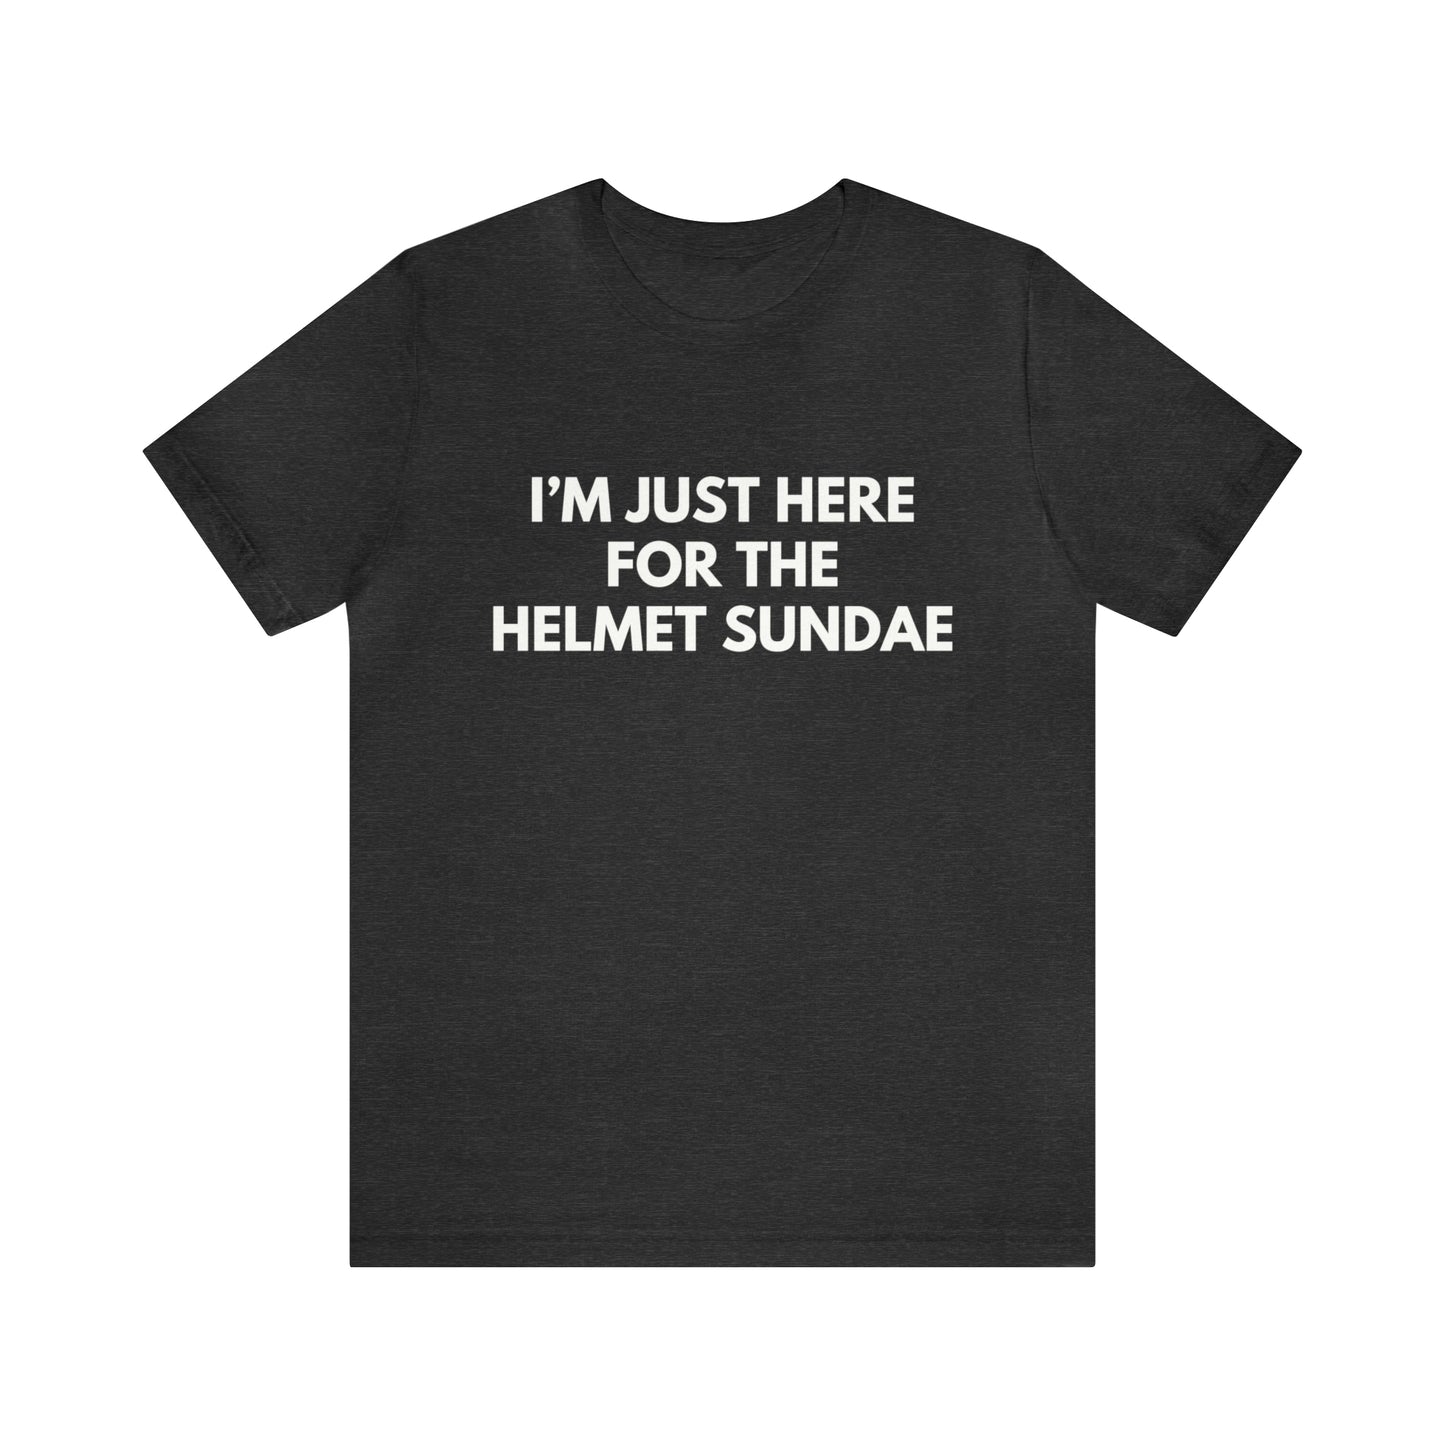 Helmet Sundae - Unisex T-shirt